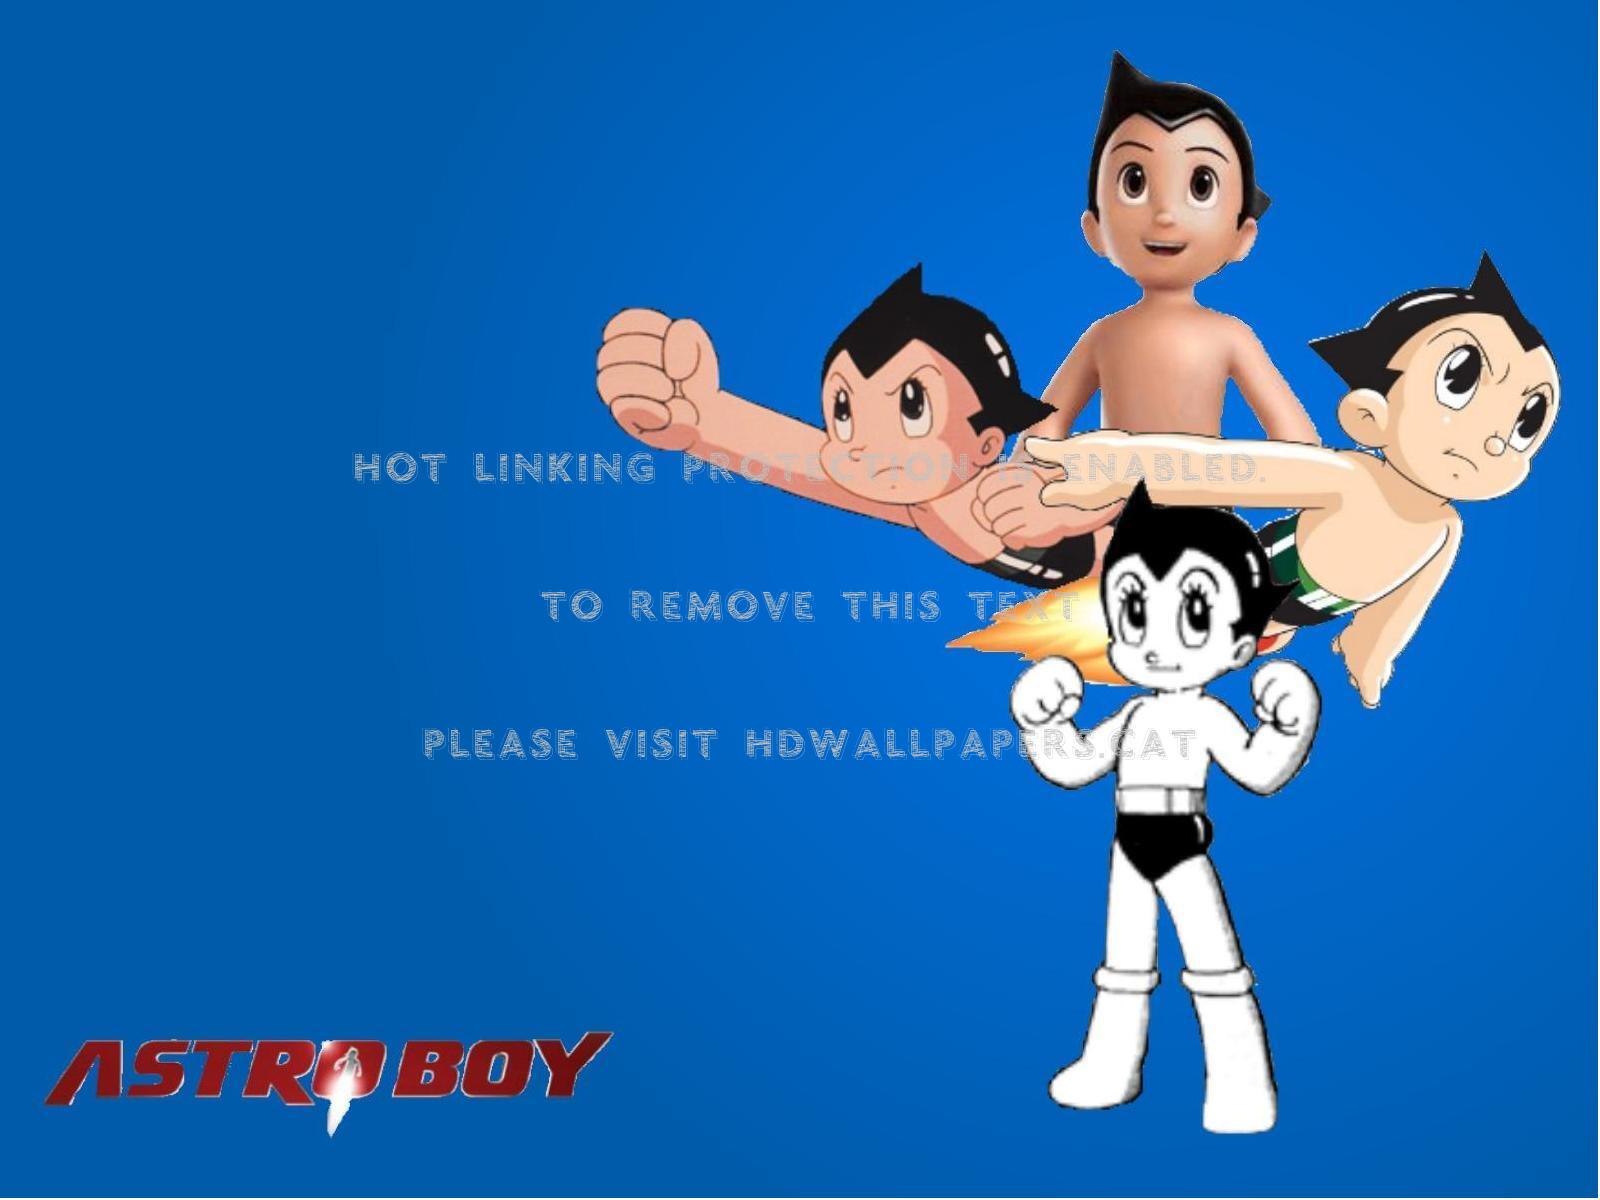 Astro Boy Through The Years Tezuka Manga - Astro Boy Through The Years - HD Wallpaper 